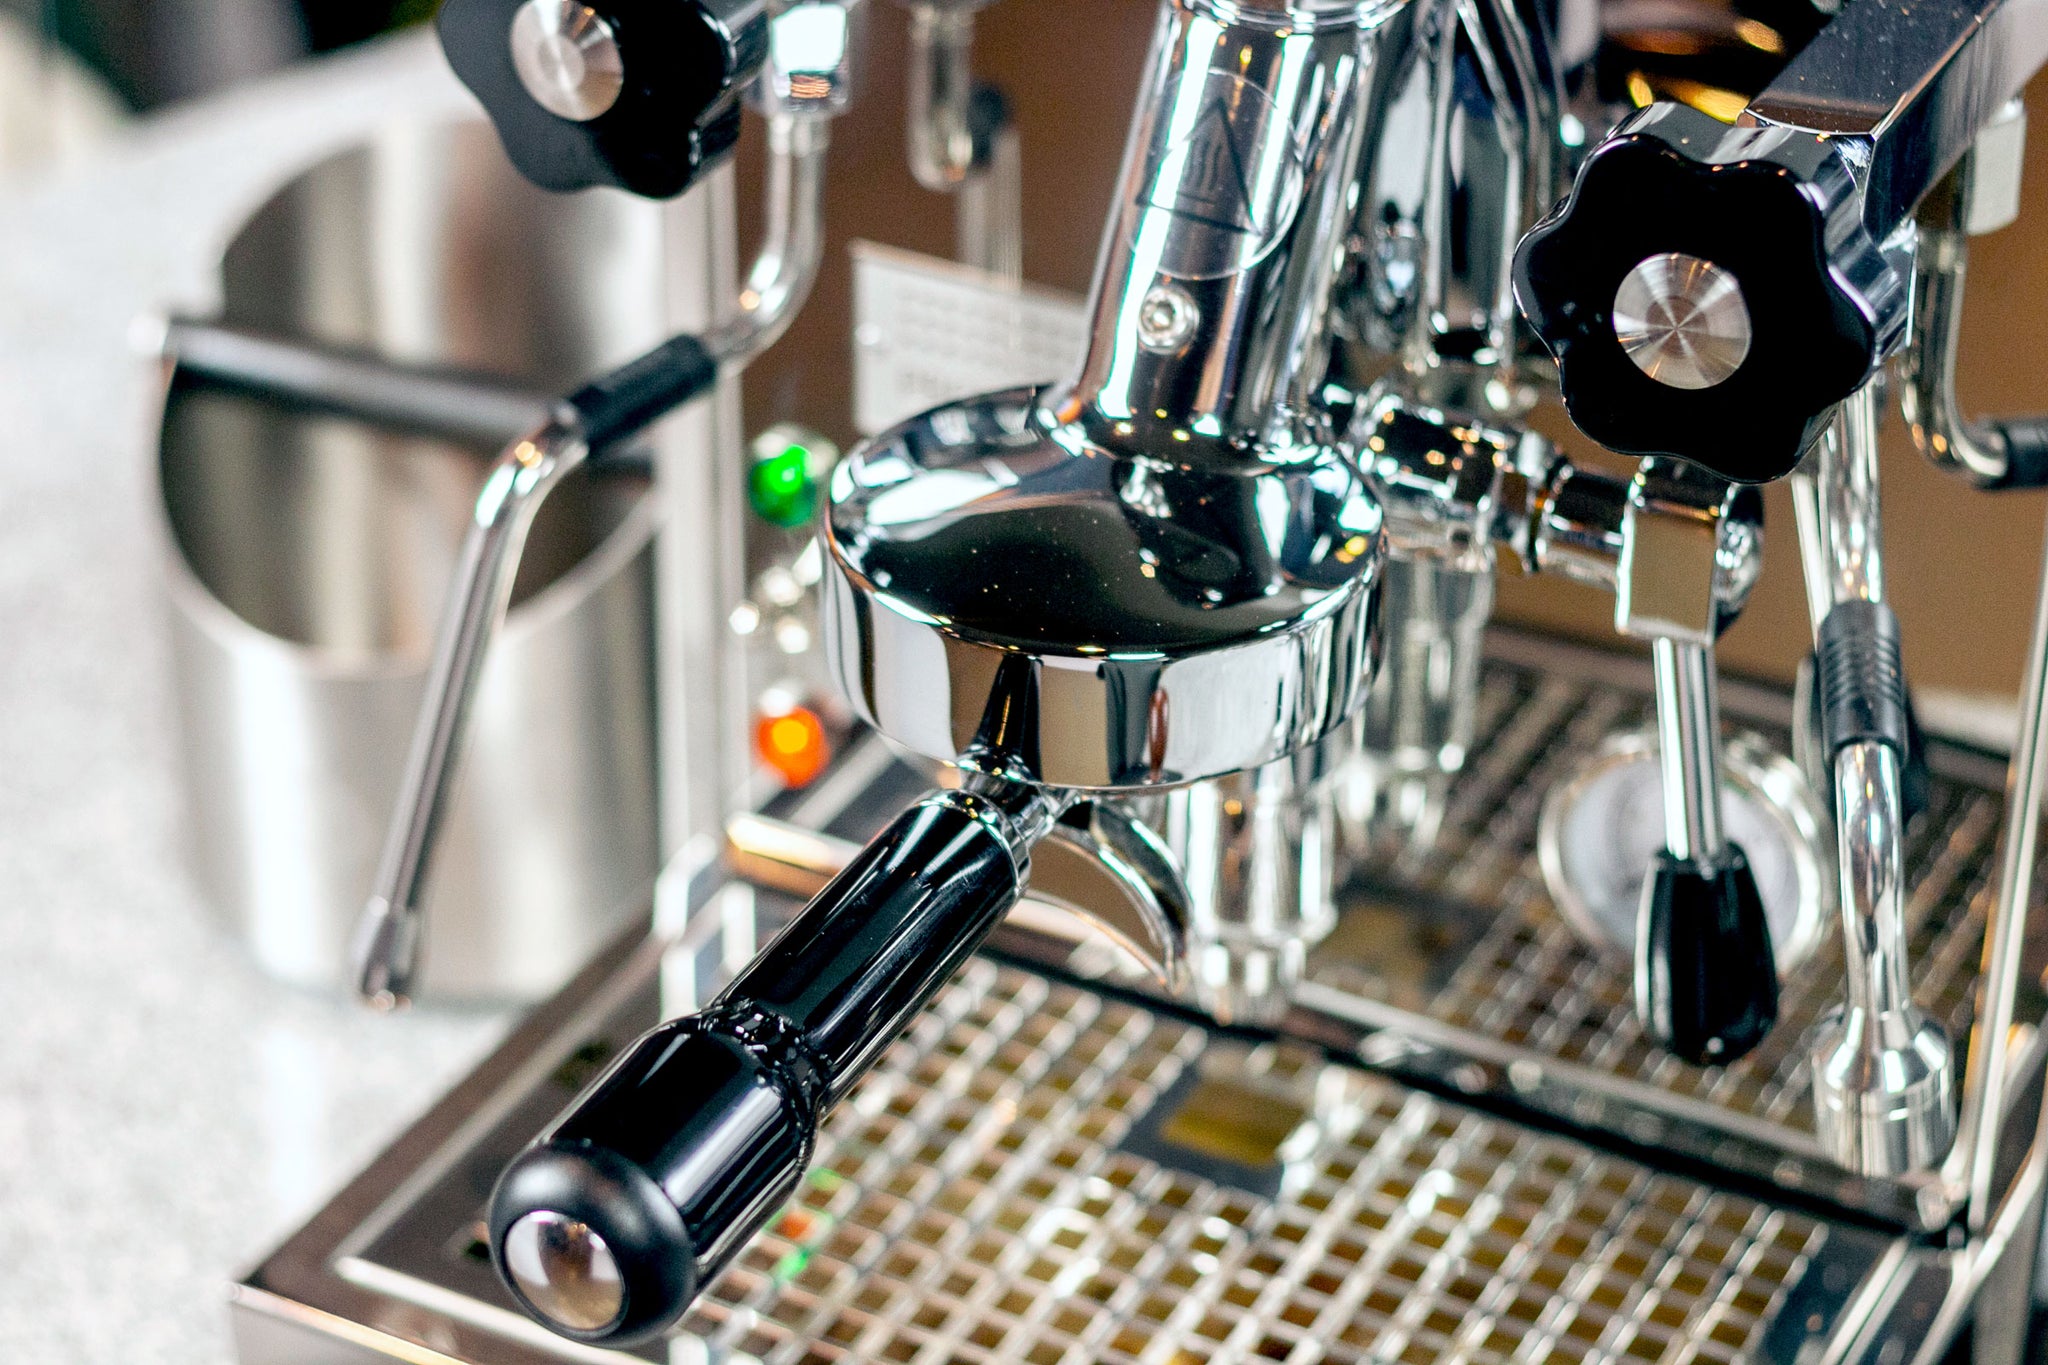 Profitec Pro 500 Espresso Machine, from Clive Coffee, espresso machine overview video